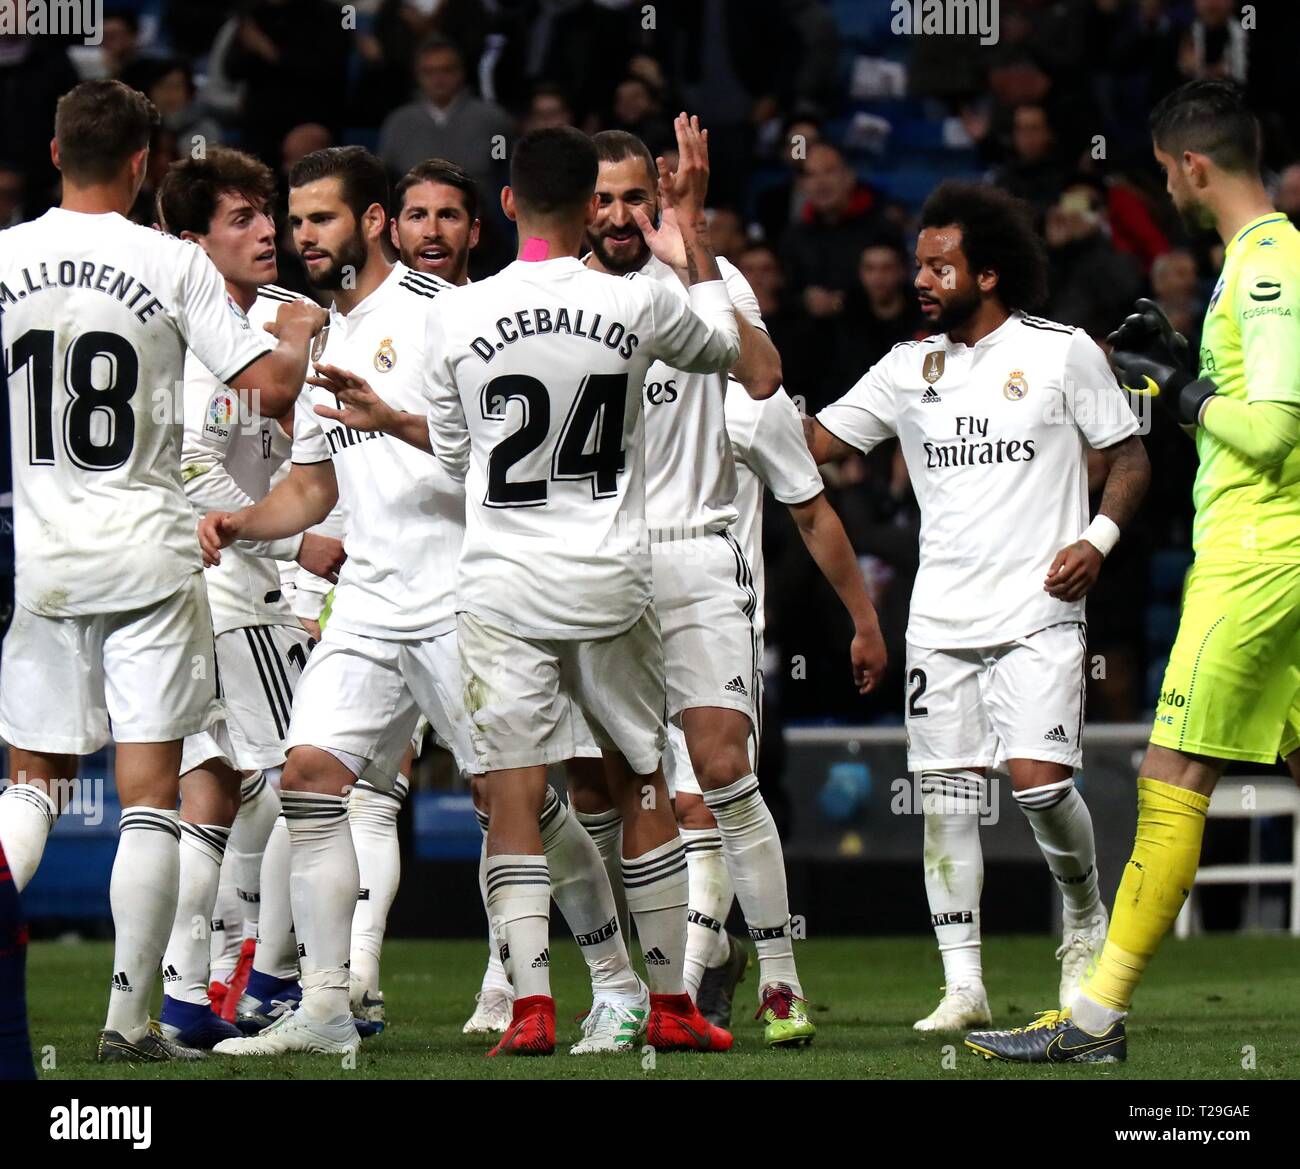 Madrid, España. 31 Mar, Los jugadores del Real Madrid celebran durante un partido de fútbol de la liga española entre el Real Madrid en Madrid, el 31 de